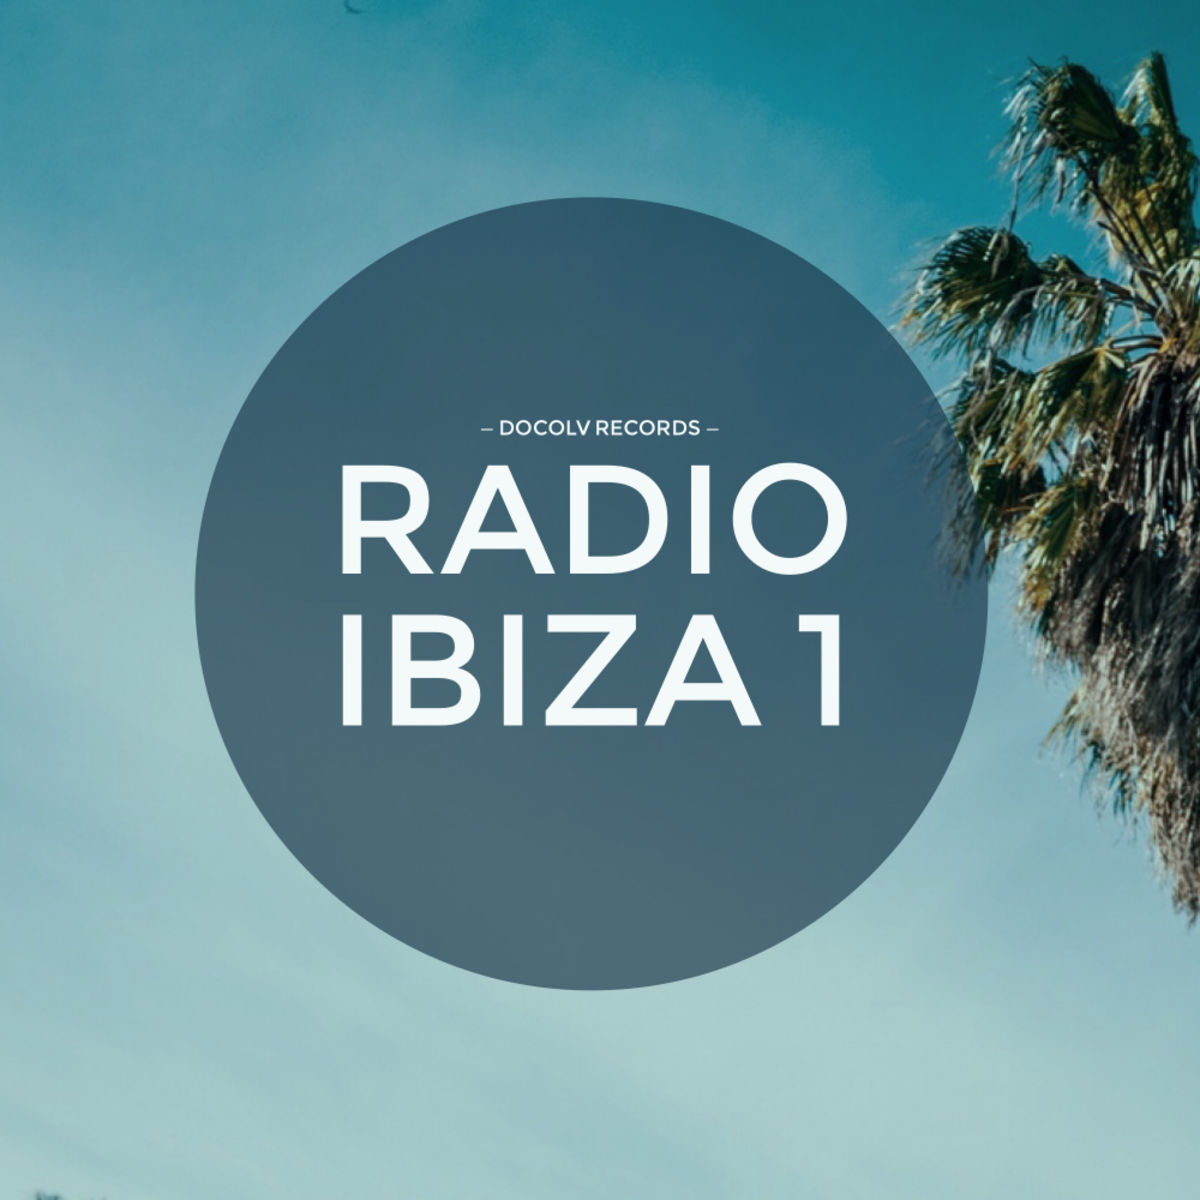 VA - Radio Ibiza 1 / Docolv Records